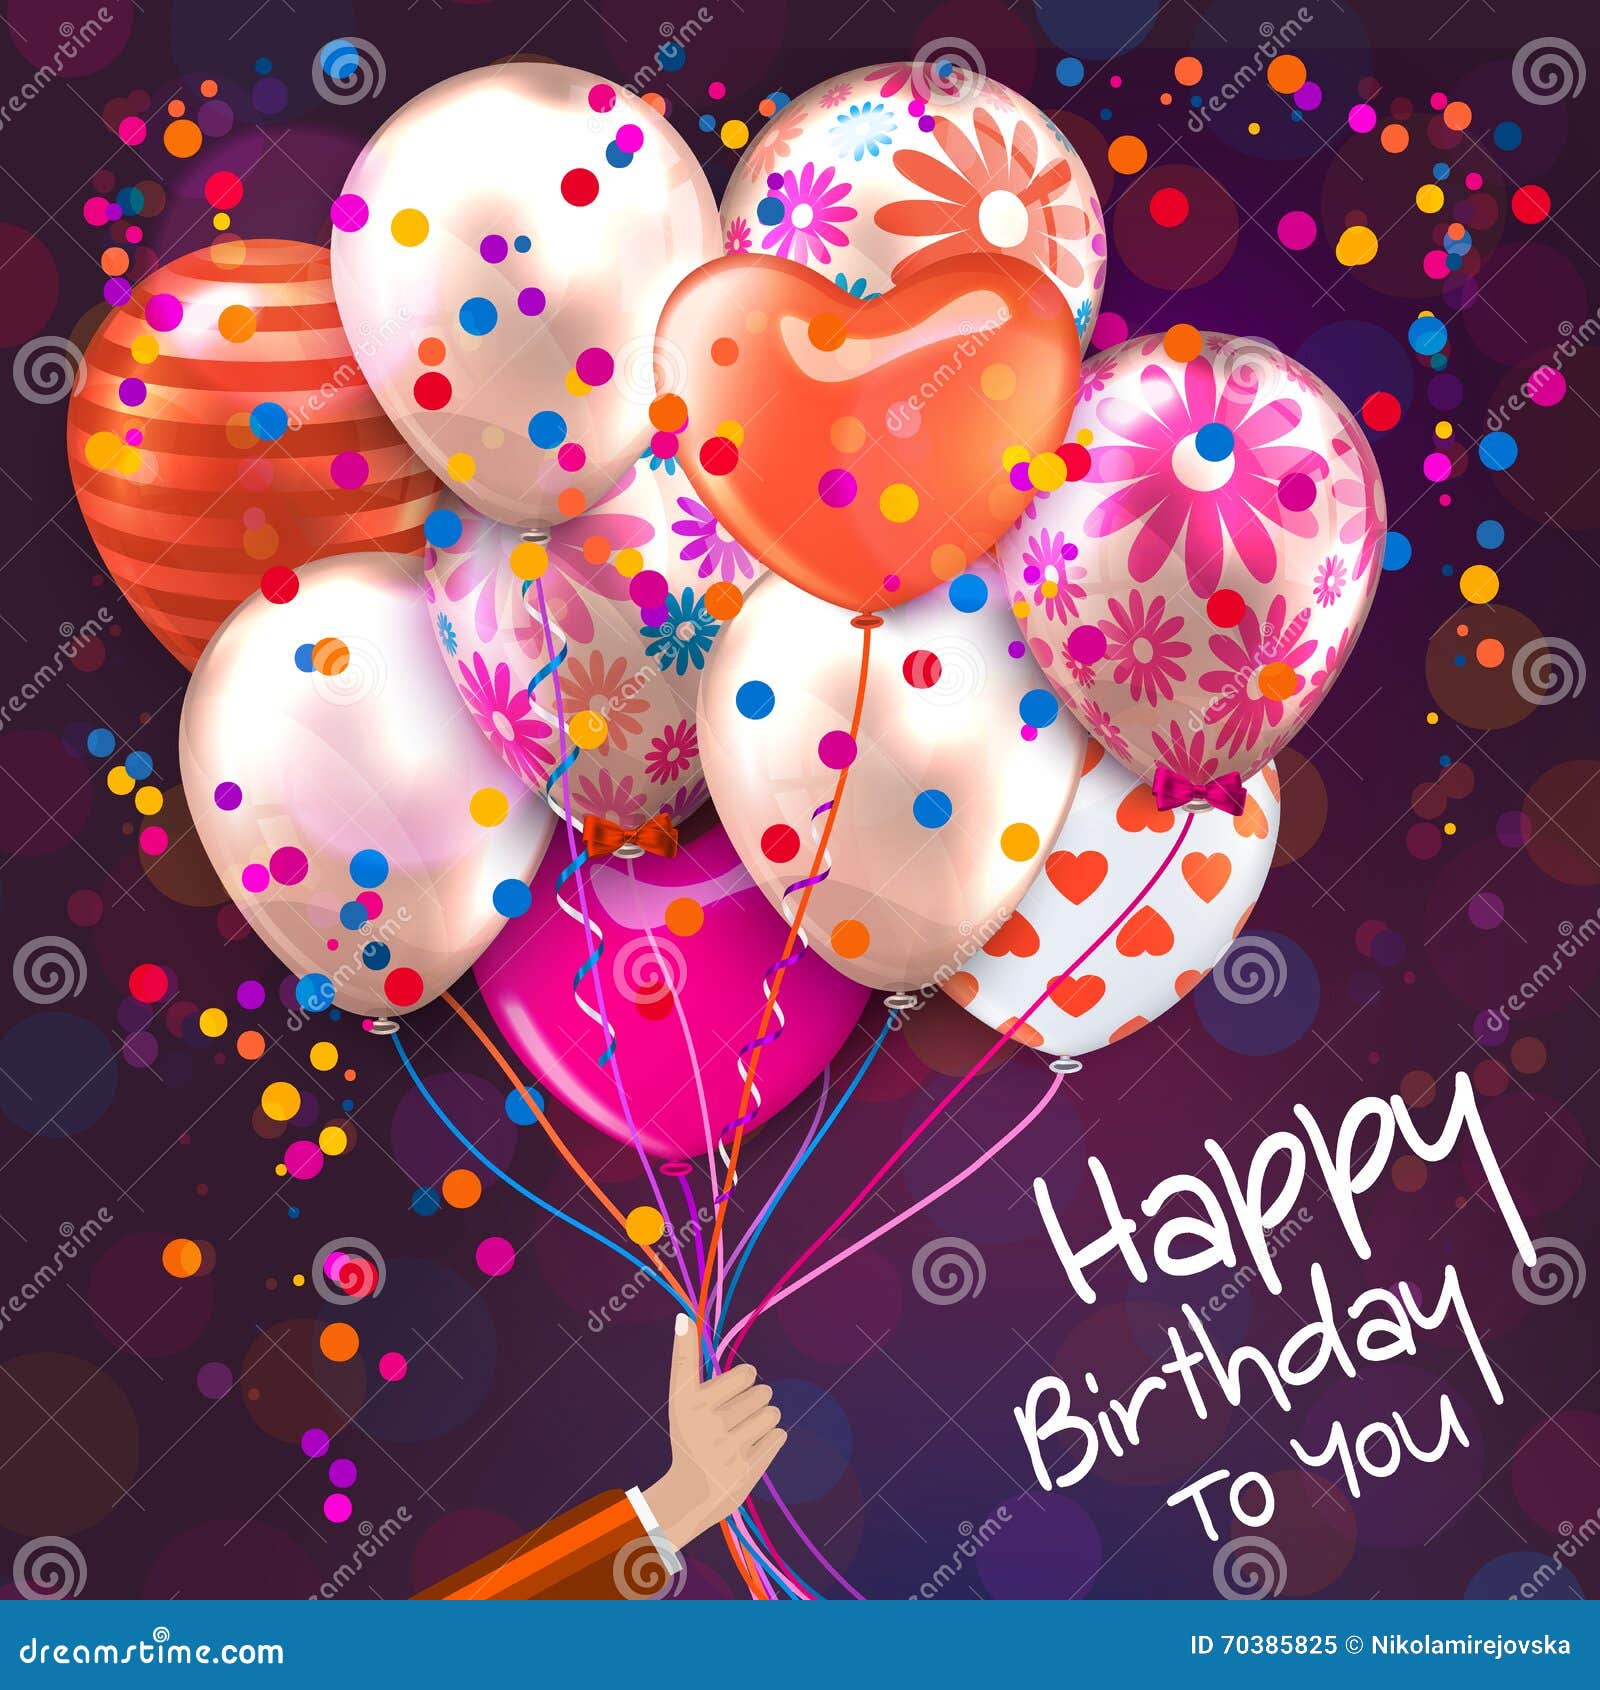 Открытка с днем рождения с воздушными шарами. Шары с днем рождения. С днём рождения шарики. Открытка шарики. Открытки с днём рождения с шариками.